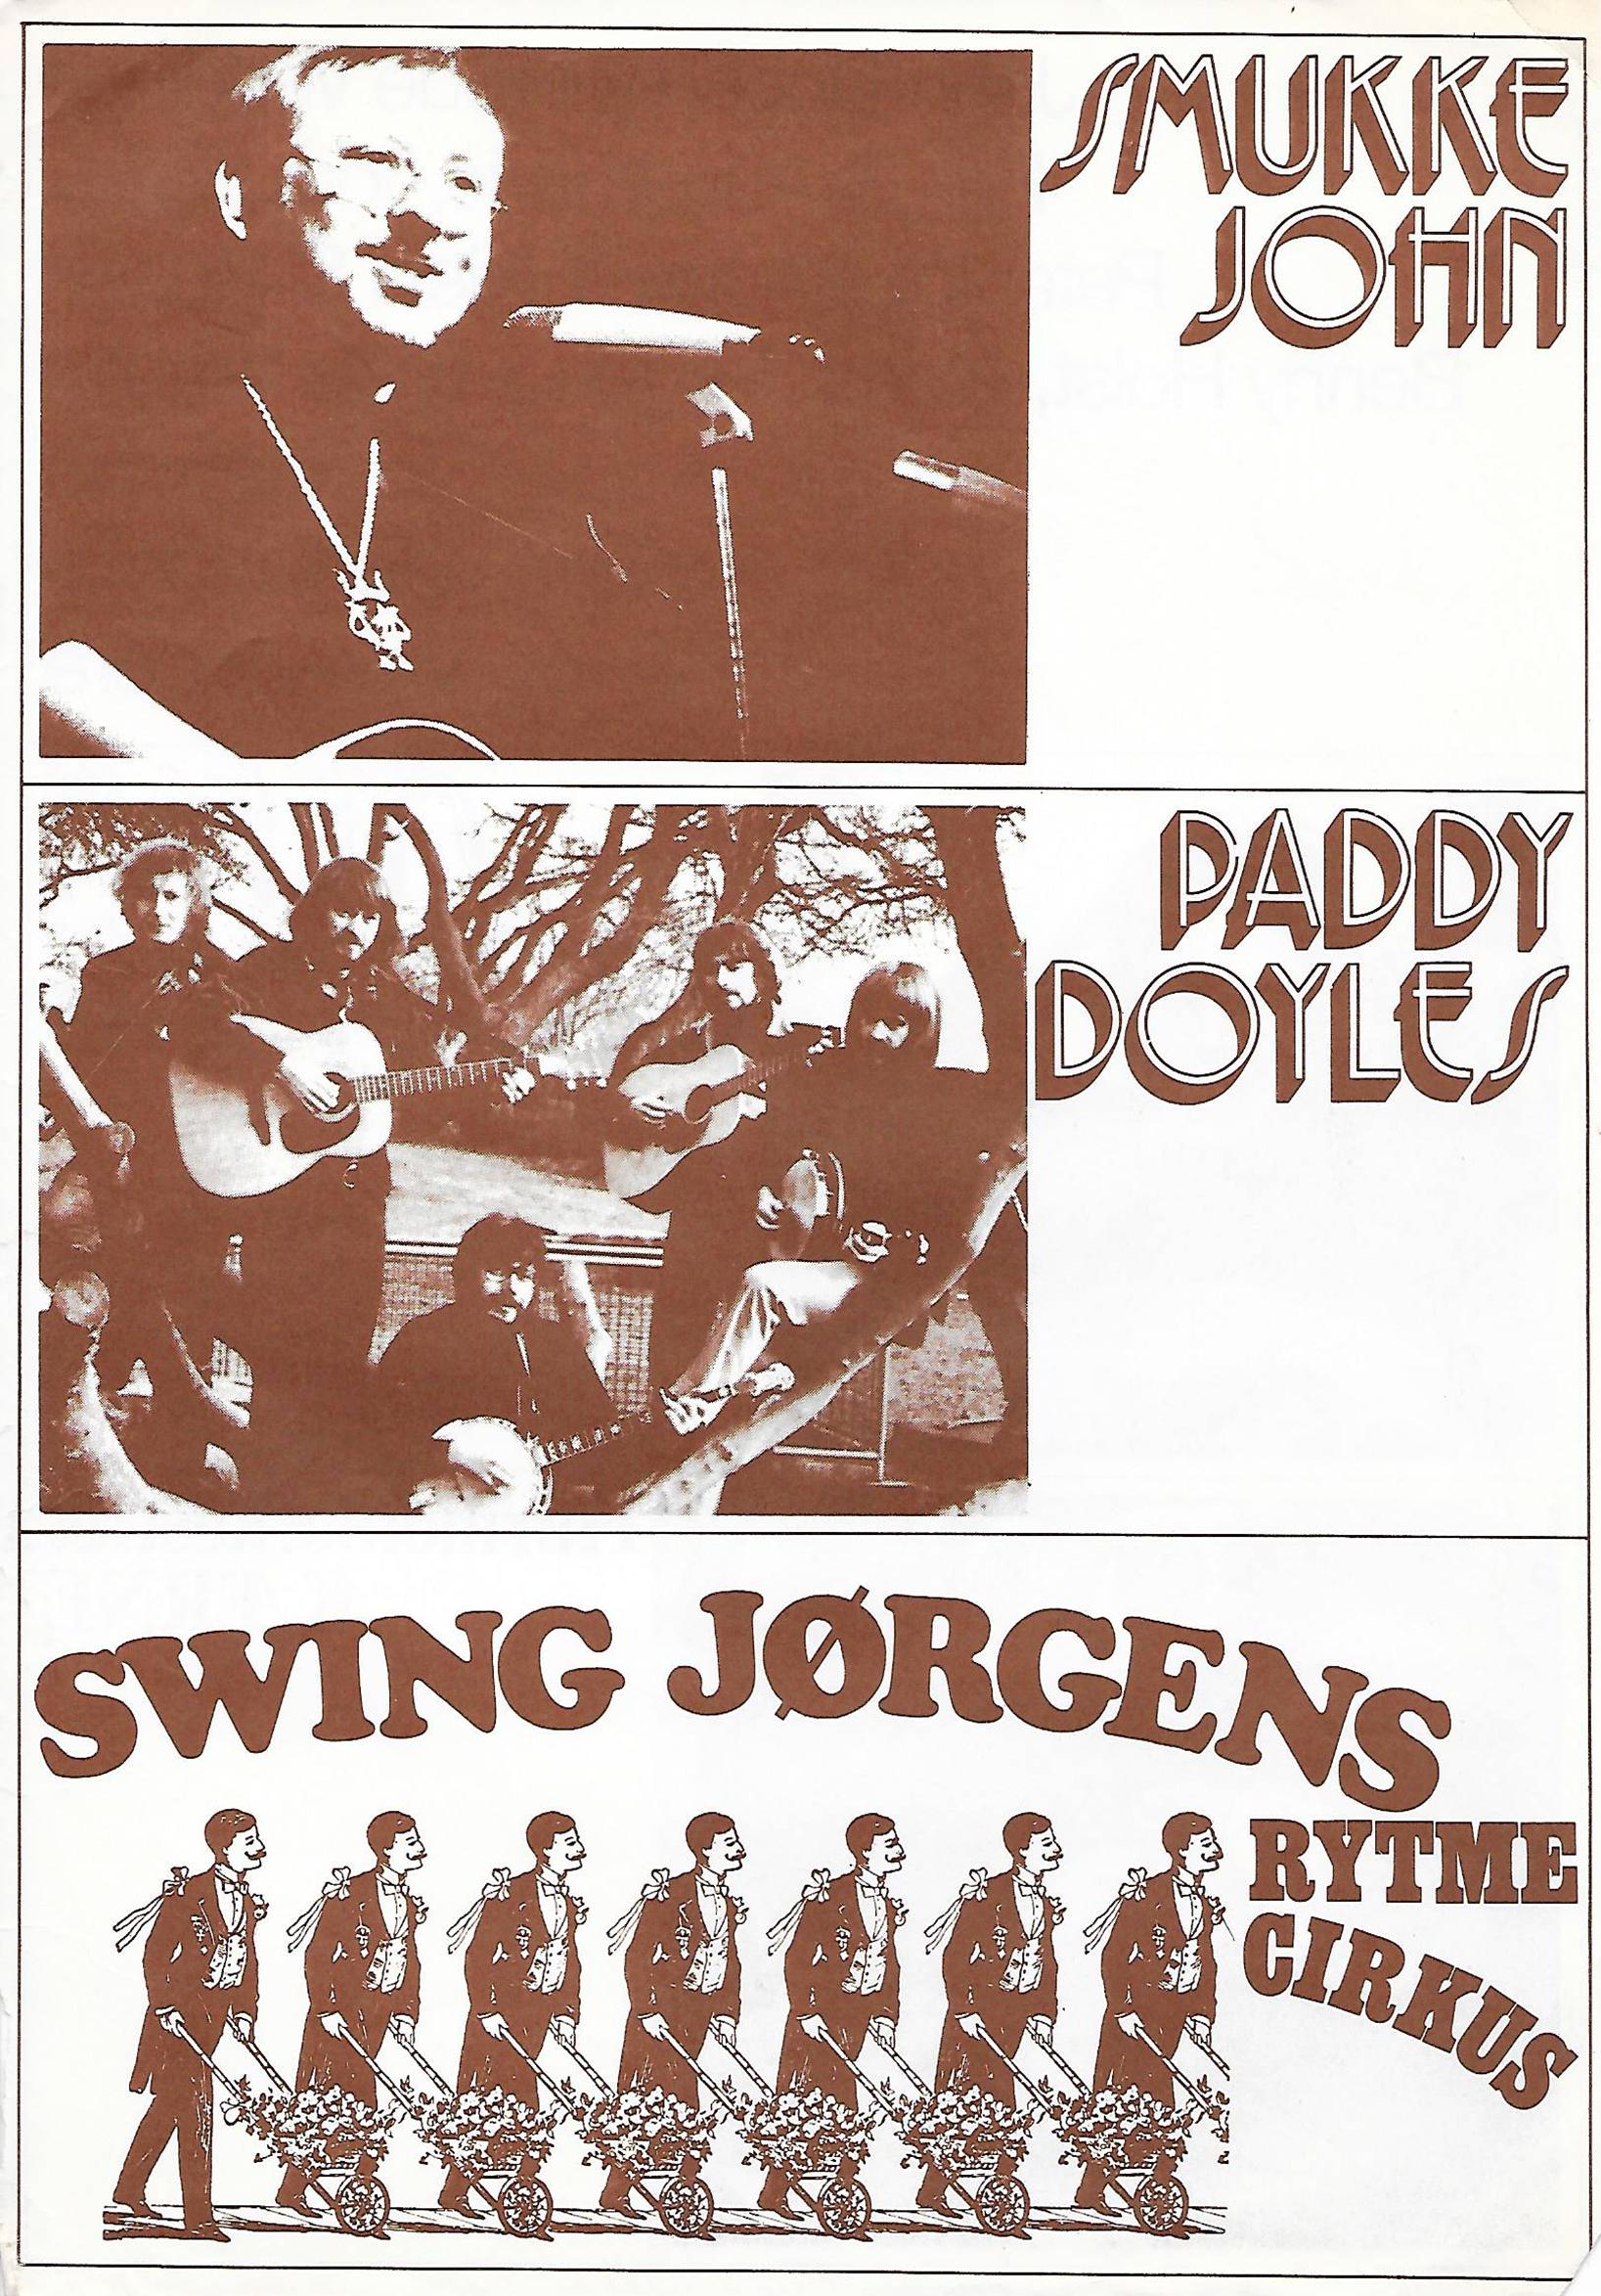 Plakat med Smukke John, PD og Swing Jørgens Rytmecirkus.